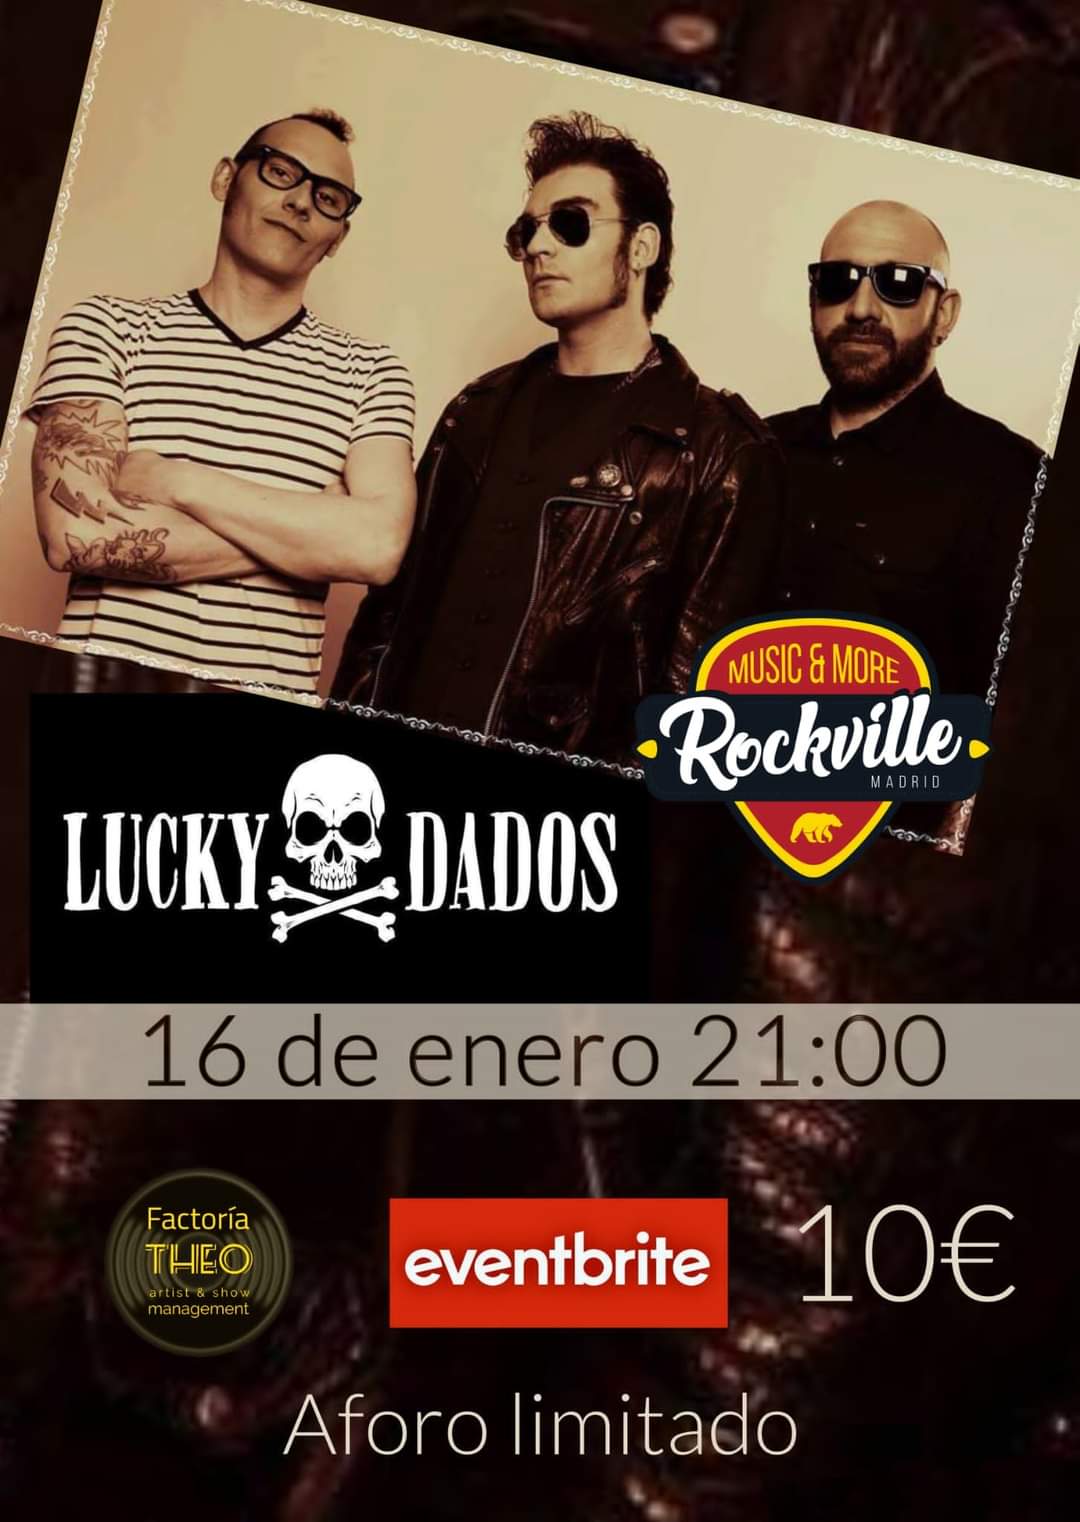 Concierto de Lucky Dados en Madrid el próximo día 16